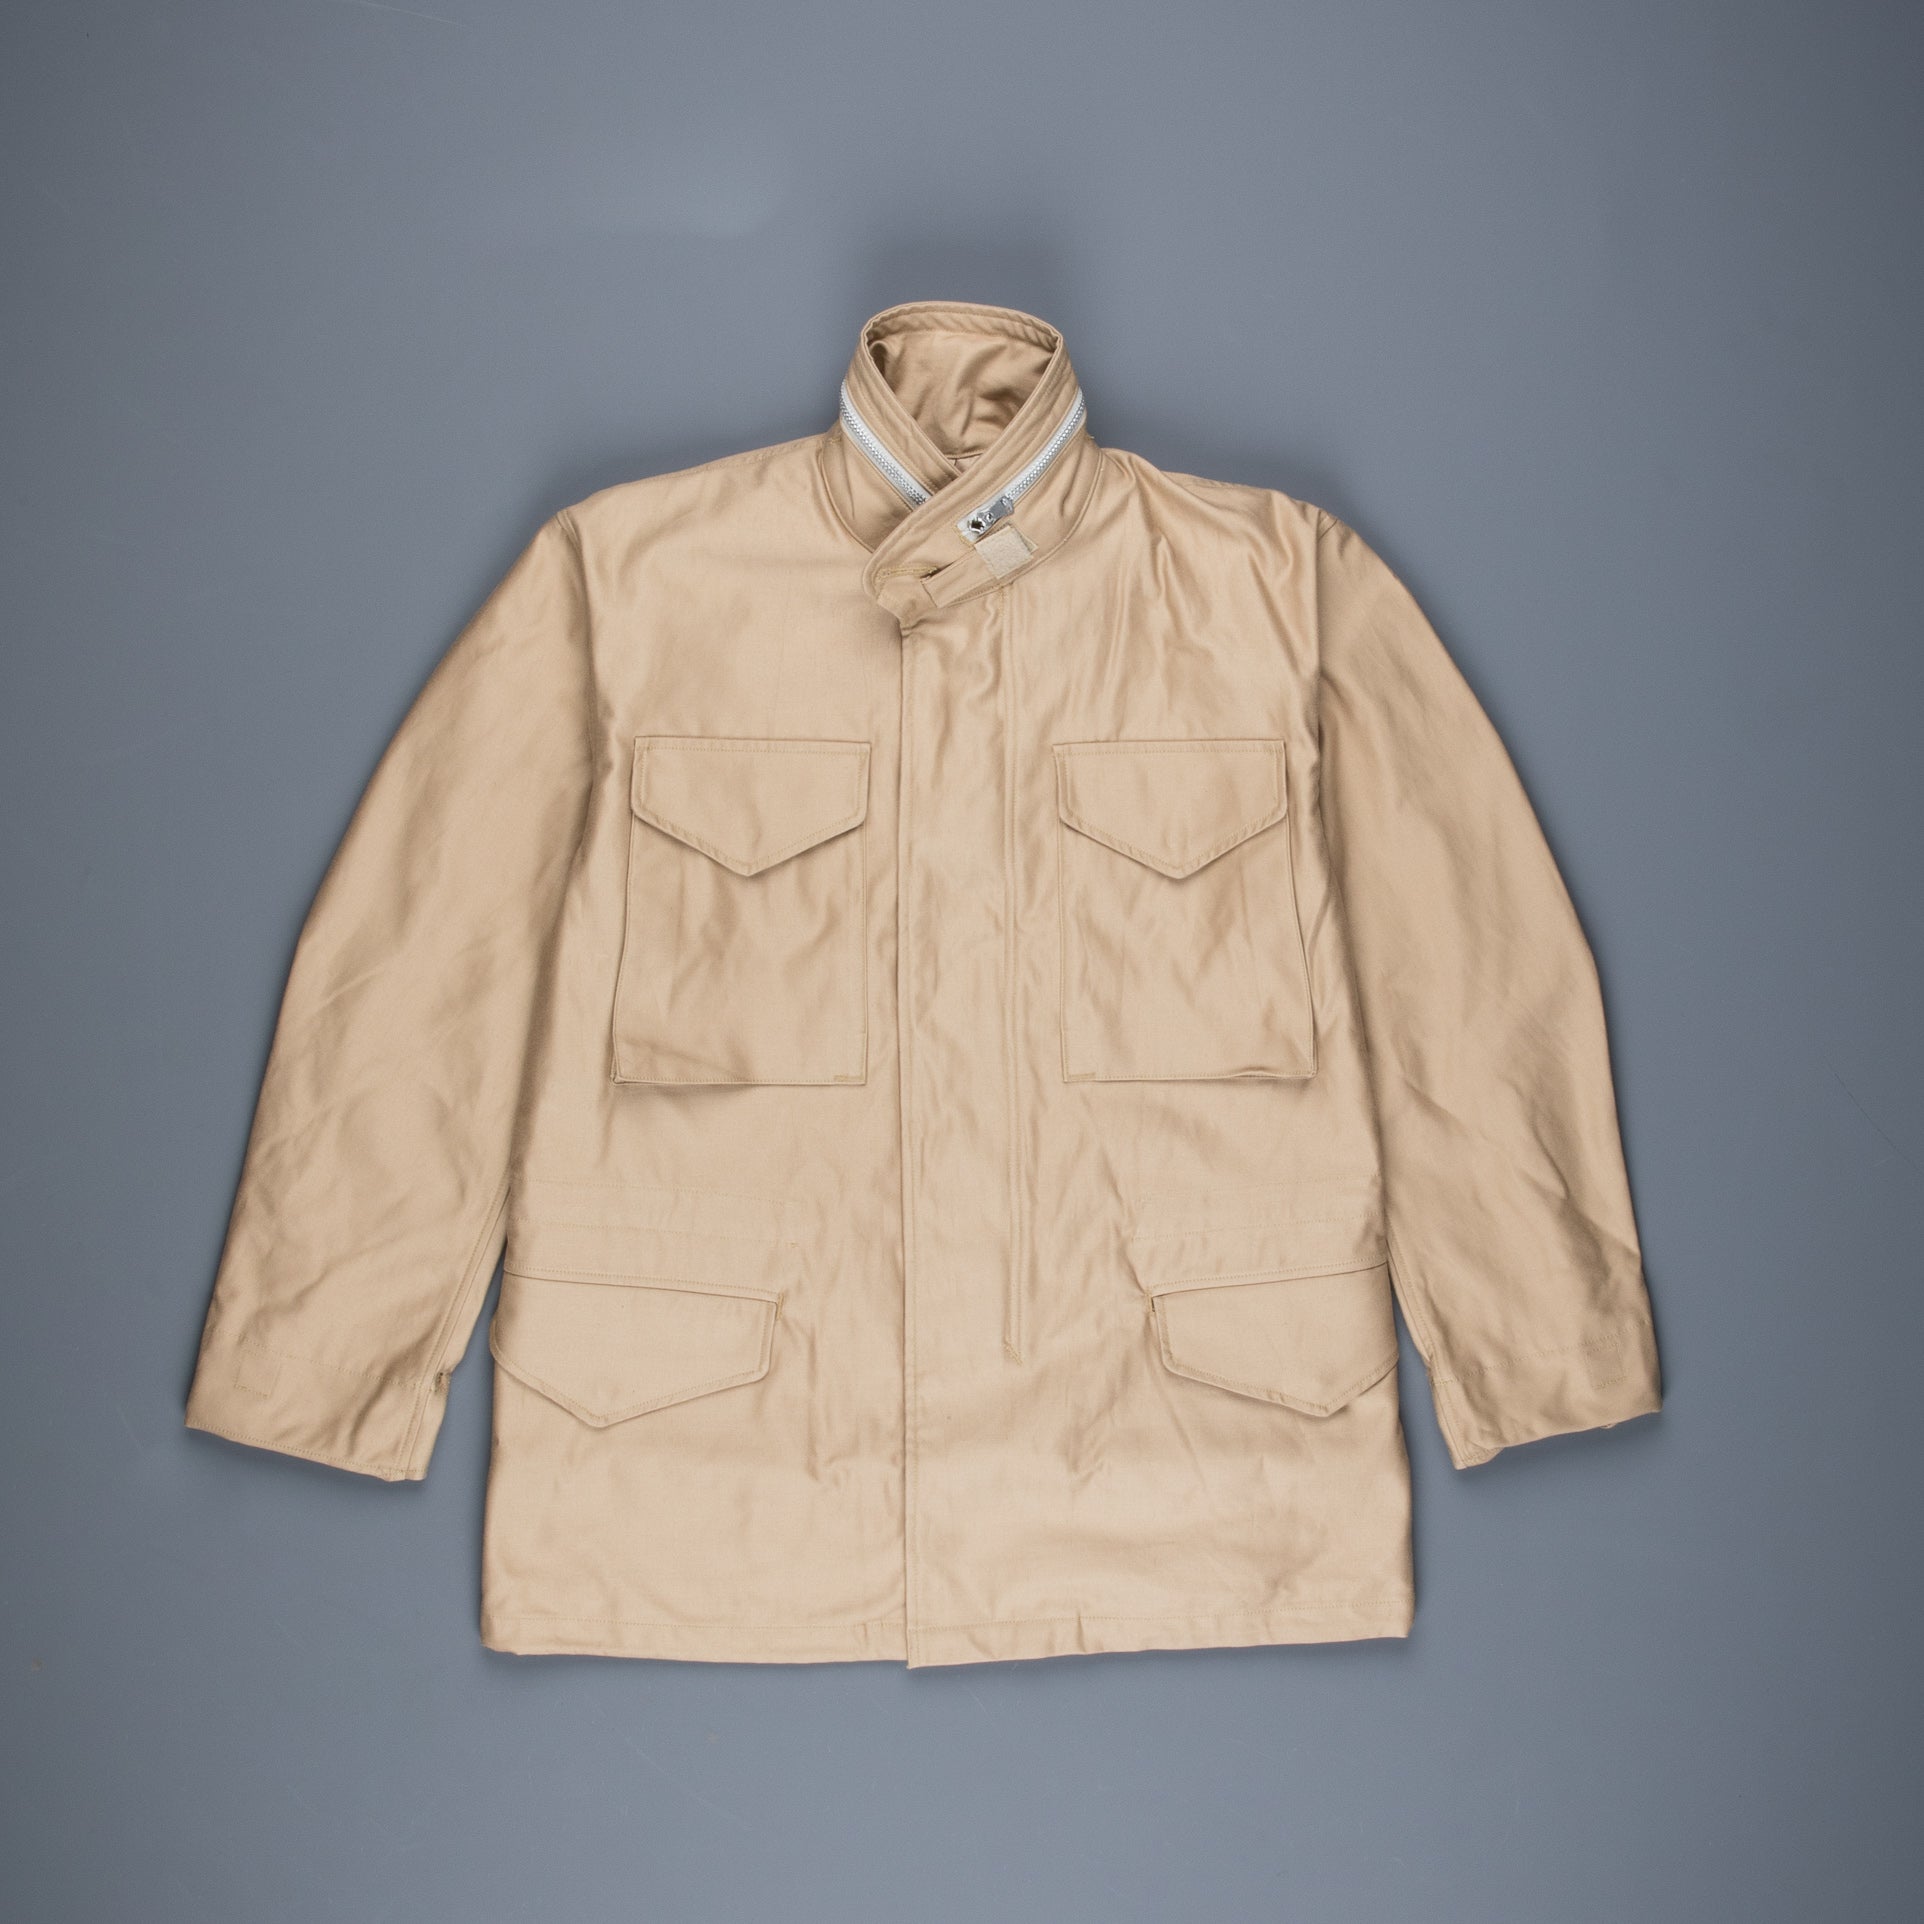 Sand M-65 jacket